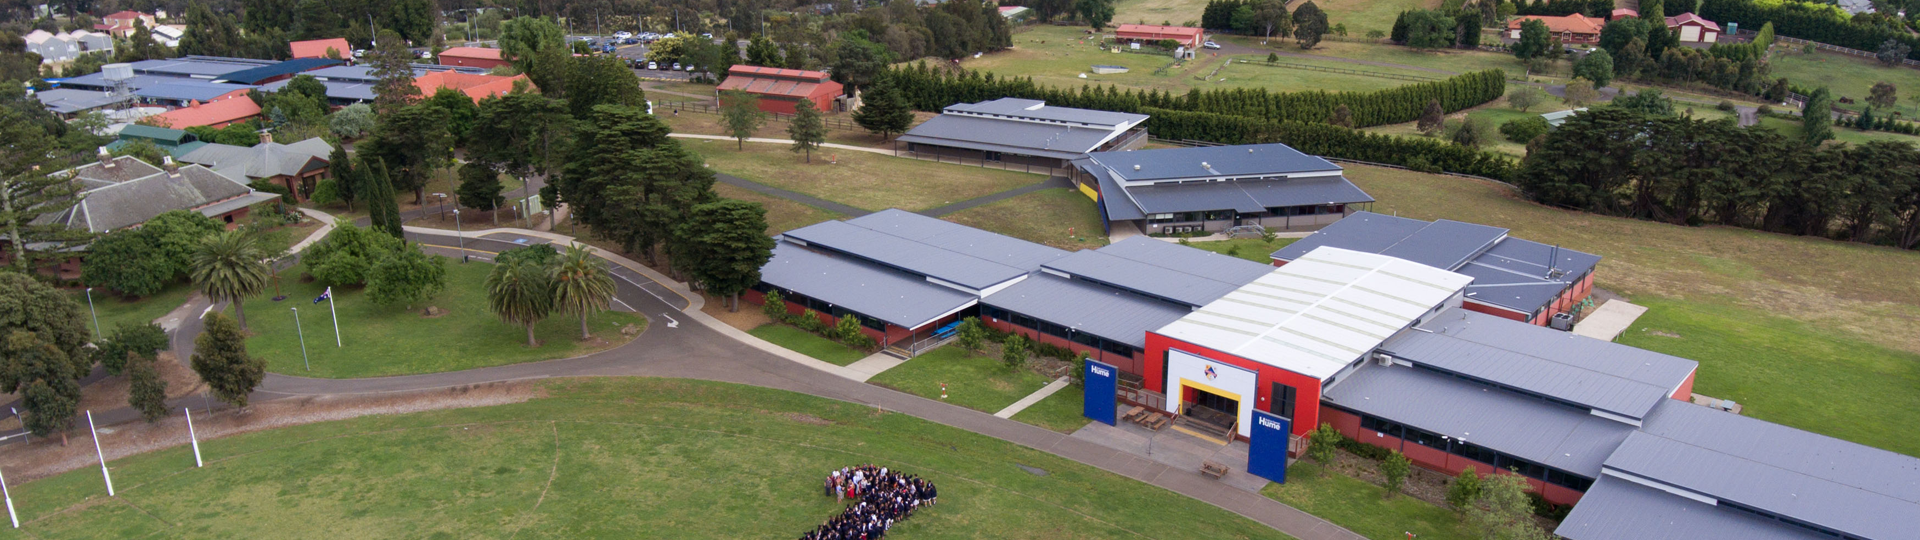 Aerial Image of School Campus